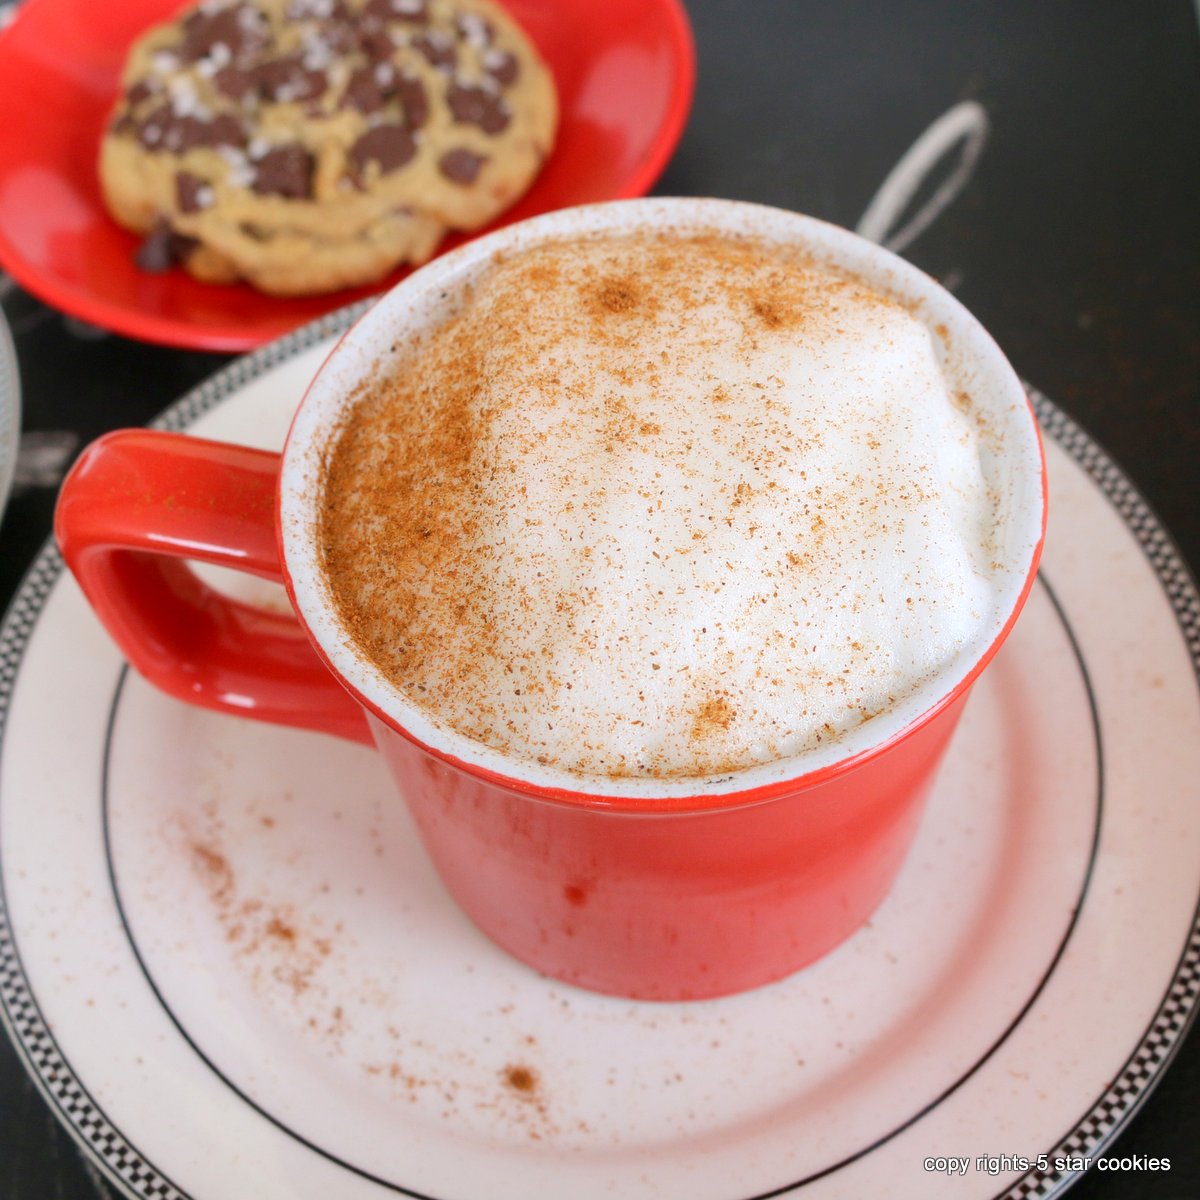 Homemade Cappuccino vs Latte in 6 min-Keurig Magic - 5 Star Cookies